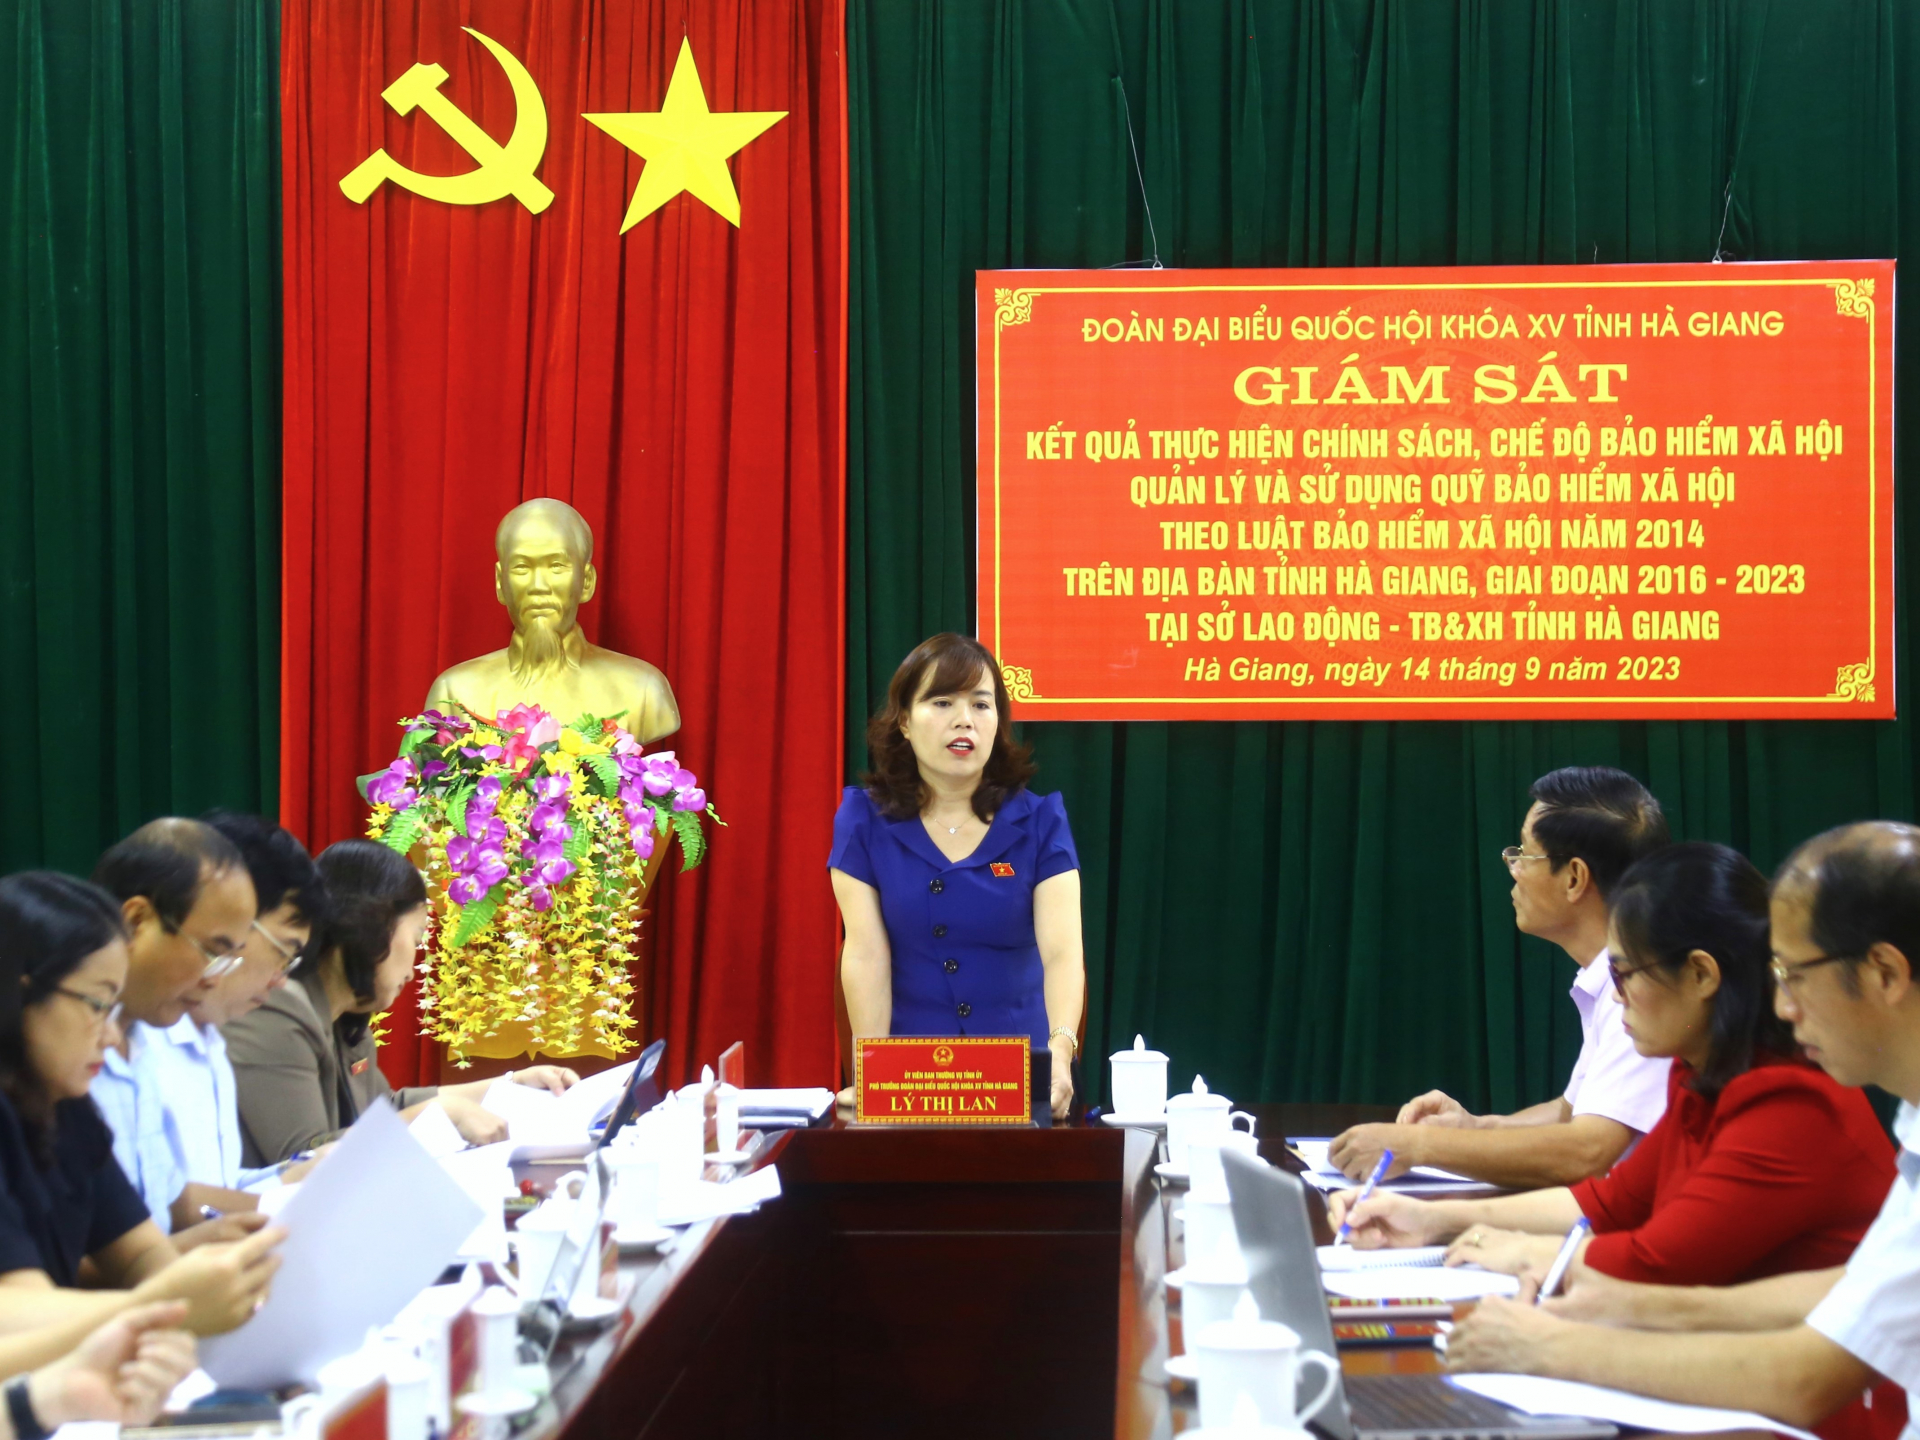 Đoàn ĐBQH khóa XV đơn vị tỉnh Hà Giang giám sát chính sách, chế độ BHXH tại Sở Lao động - TB&XH.